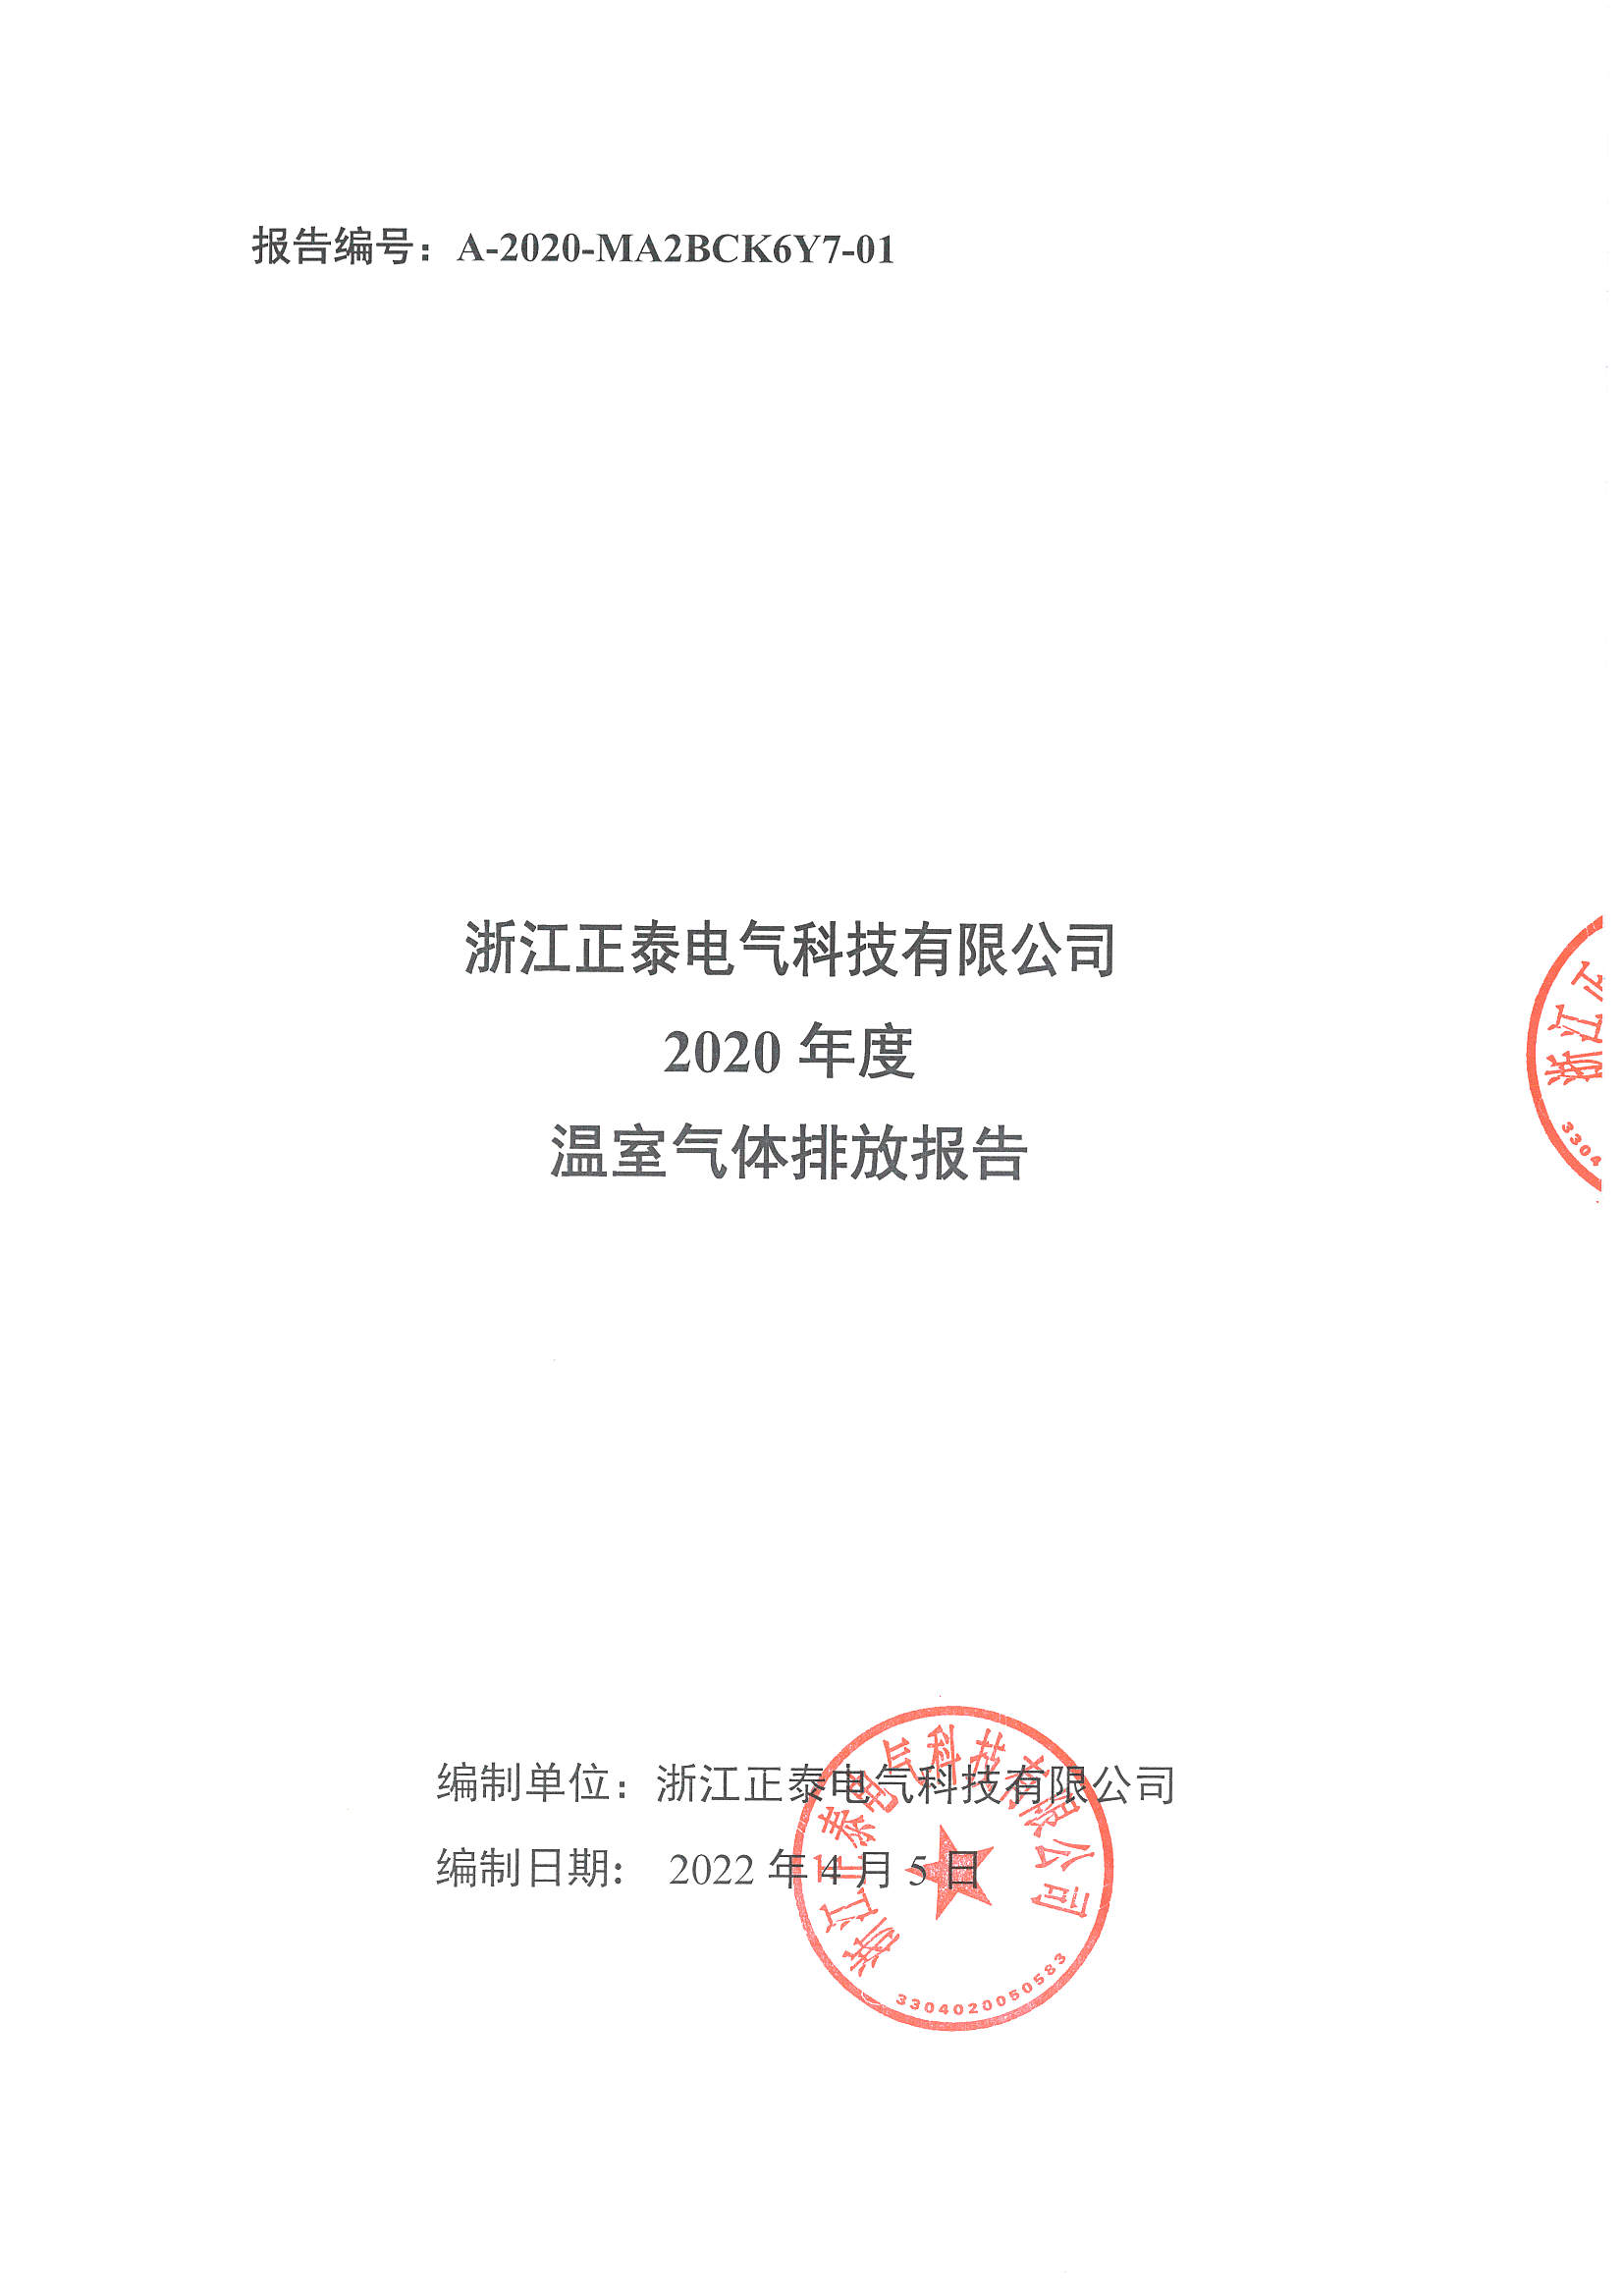 浙江正泰电气科技有限公司2020年度温室气体排放报告_页面_1.jpg